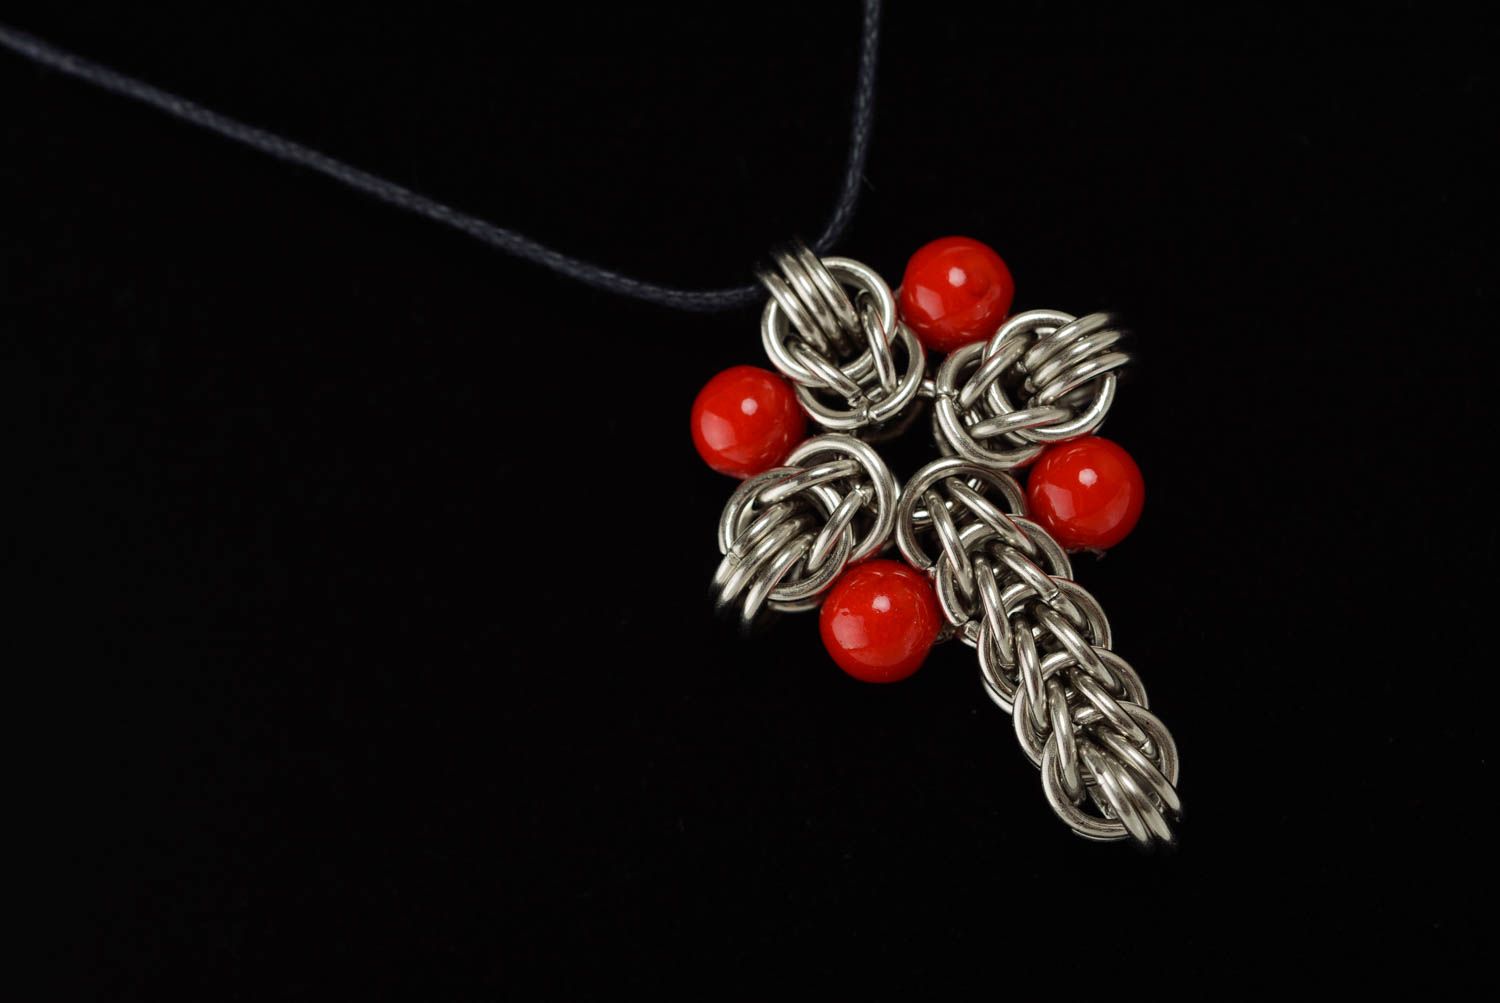 Крестик из металла на шнурке кольчугоплетение с красными бусинами ручной работы фото 4